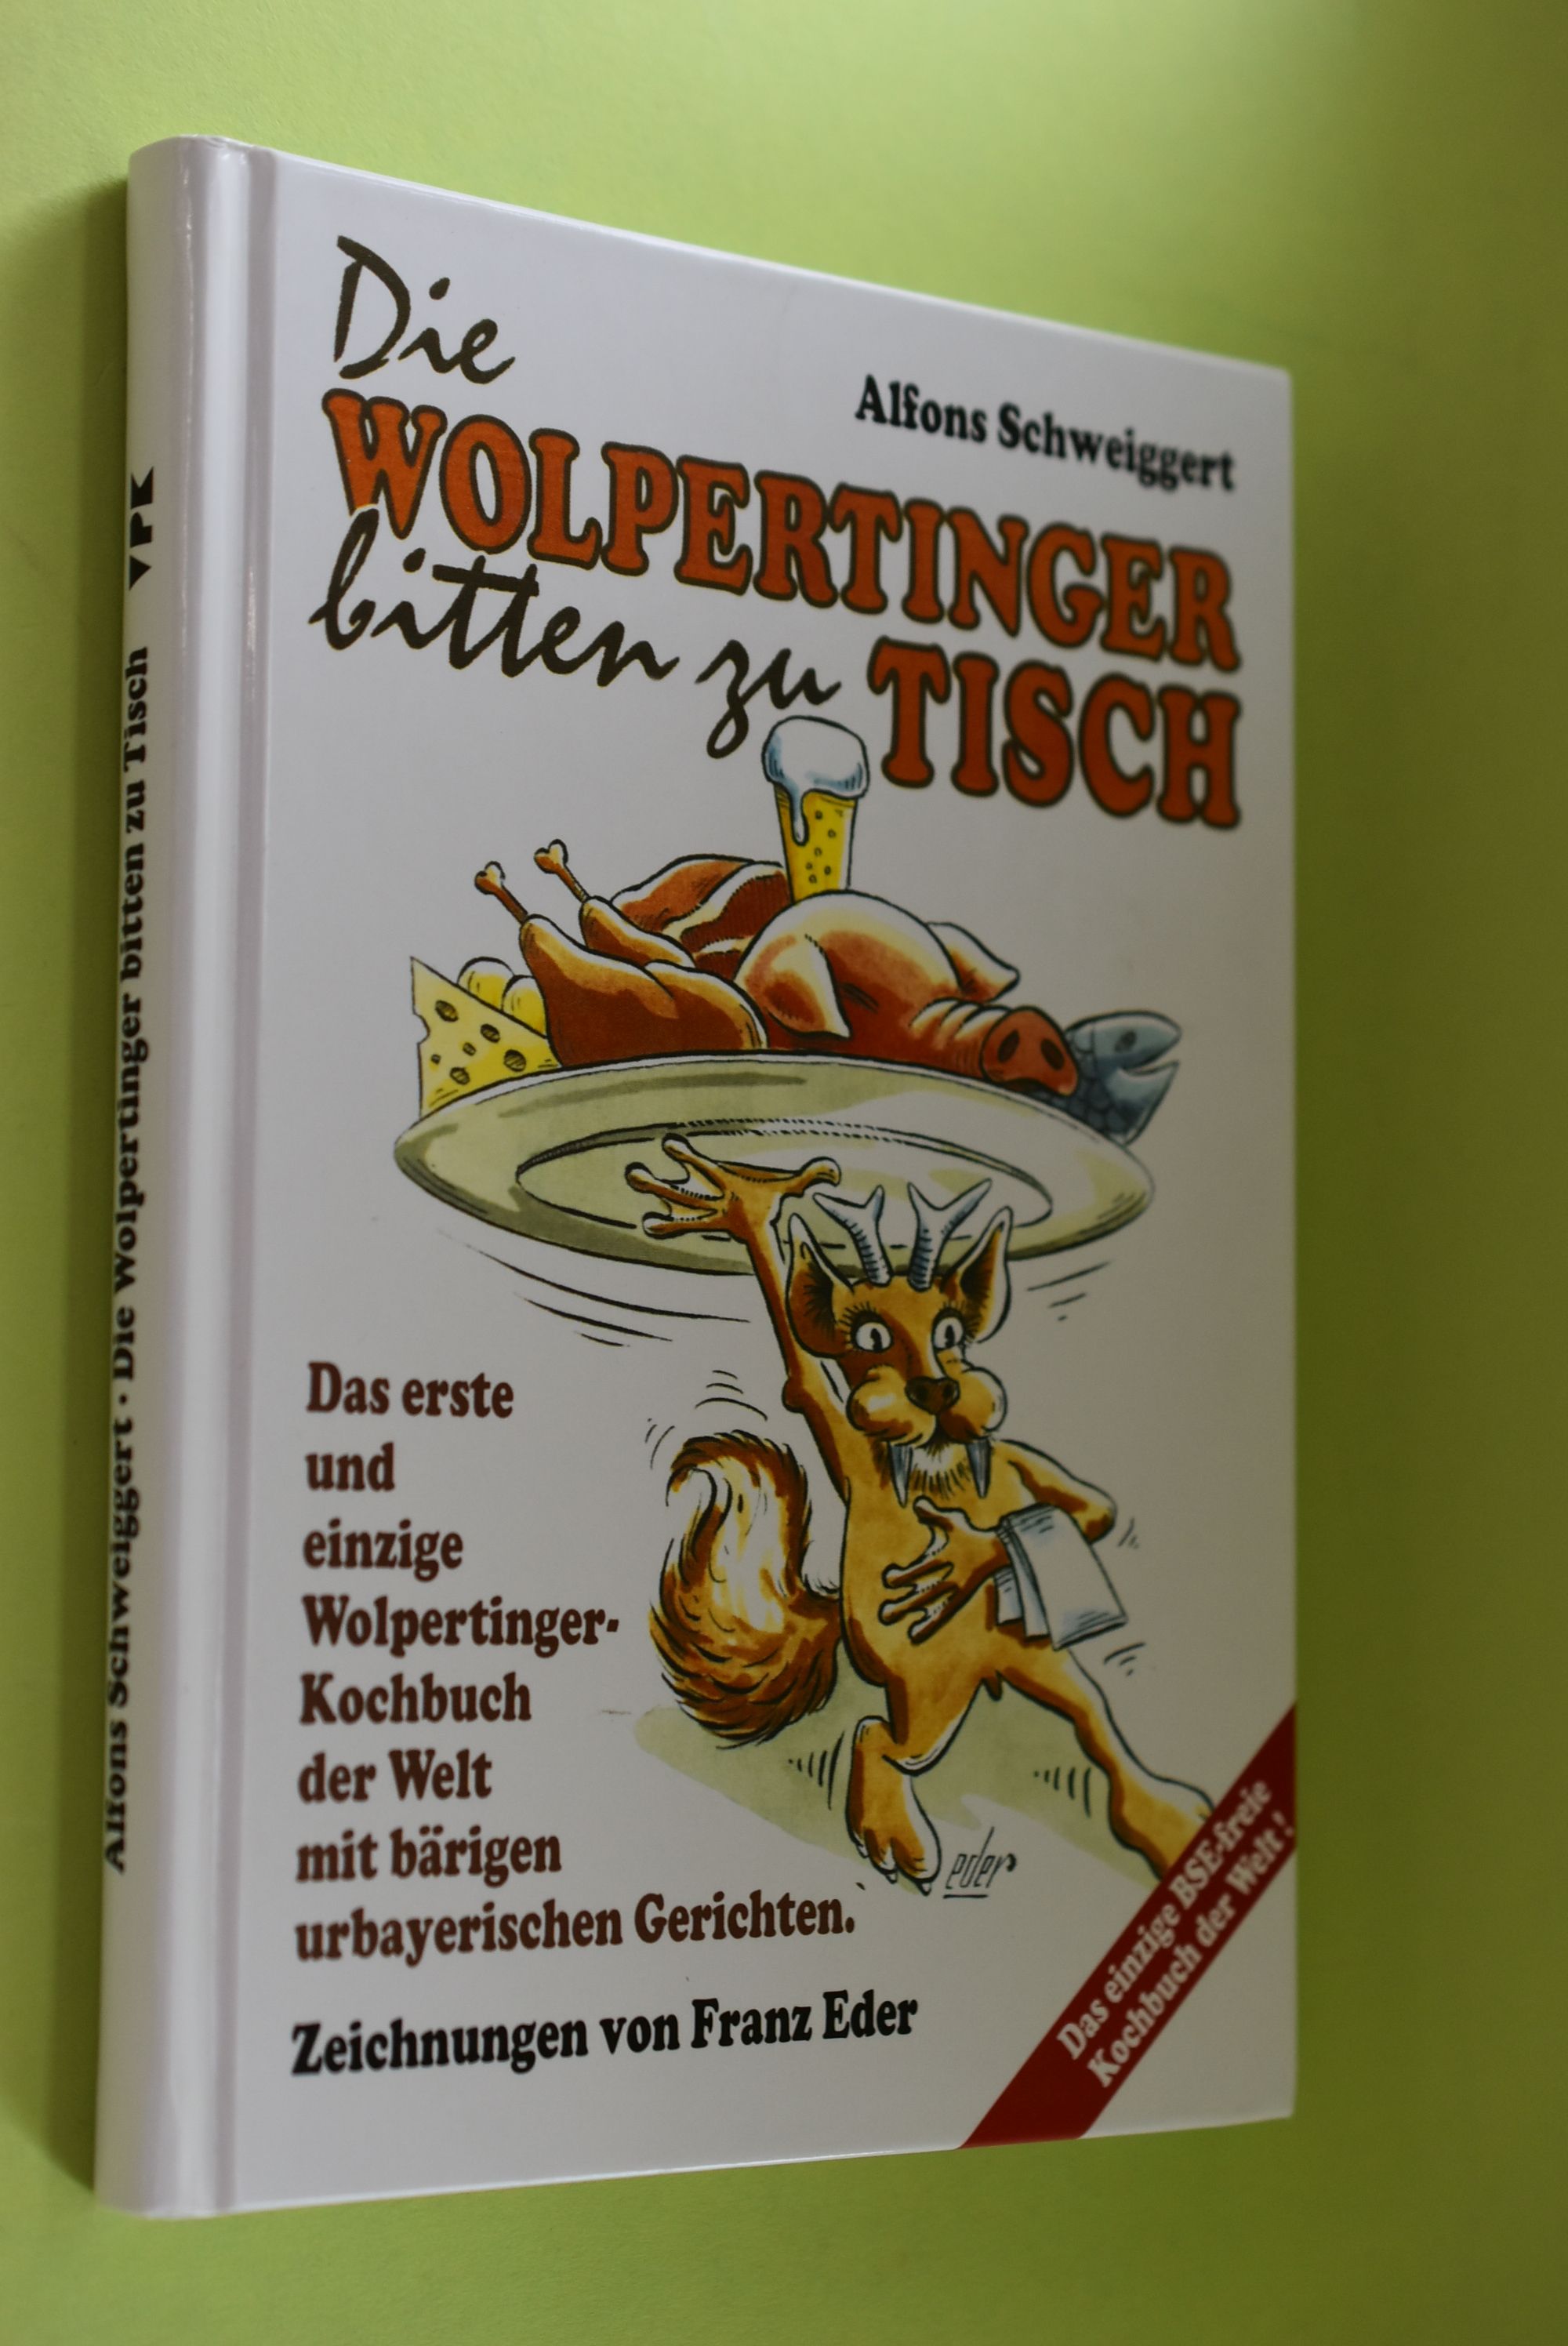 Die Wolpertinger bitten zu Tisch : das erste und einzige Wolpertinger Kochbuch der Welt mit bärigen urbayerischen Gerichten. Mit ebenso bärigen Zeichn. von Franz Eder. In Verbindung mit 